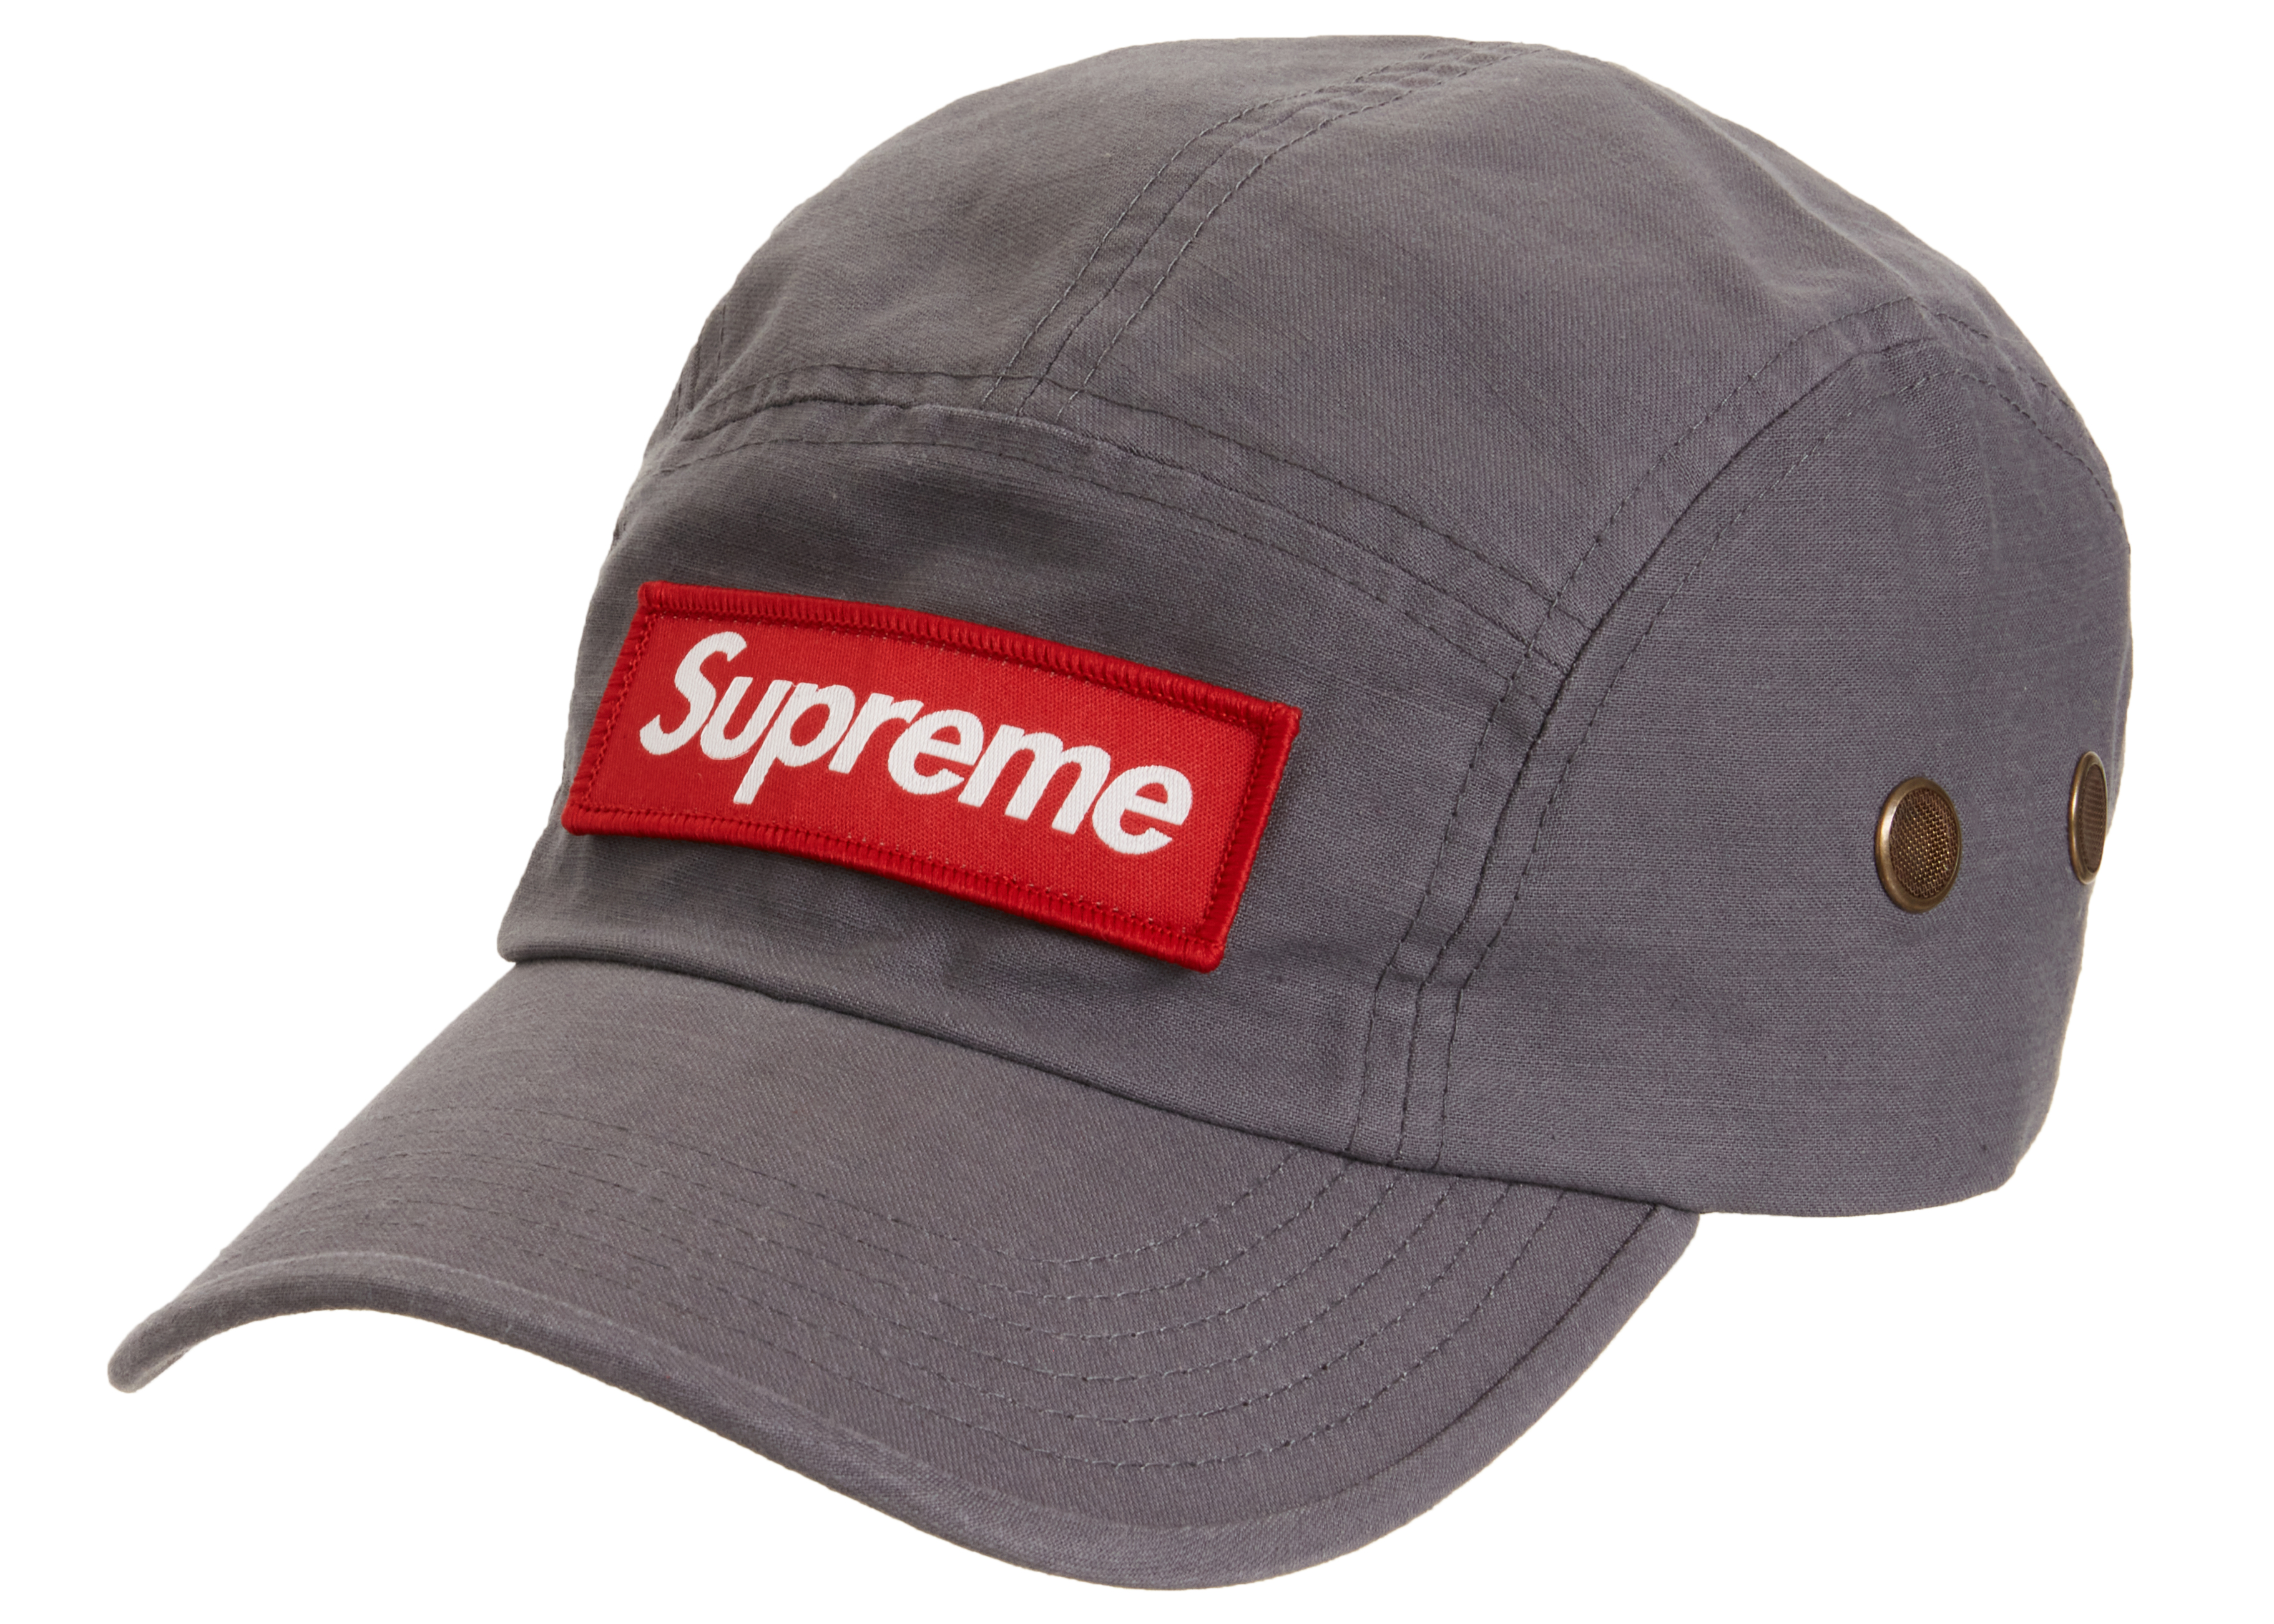 supreme military grey cap